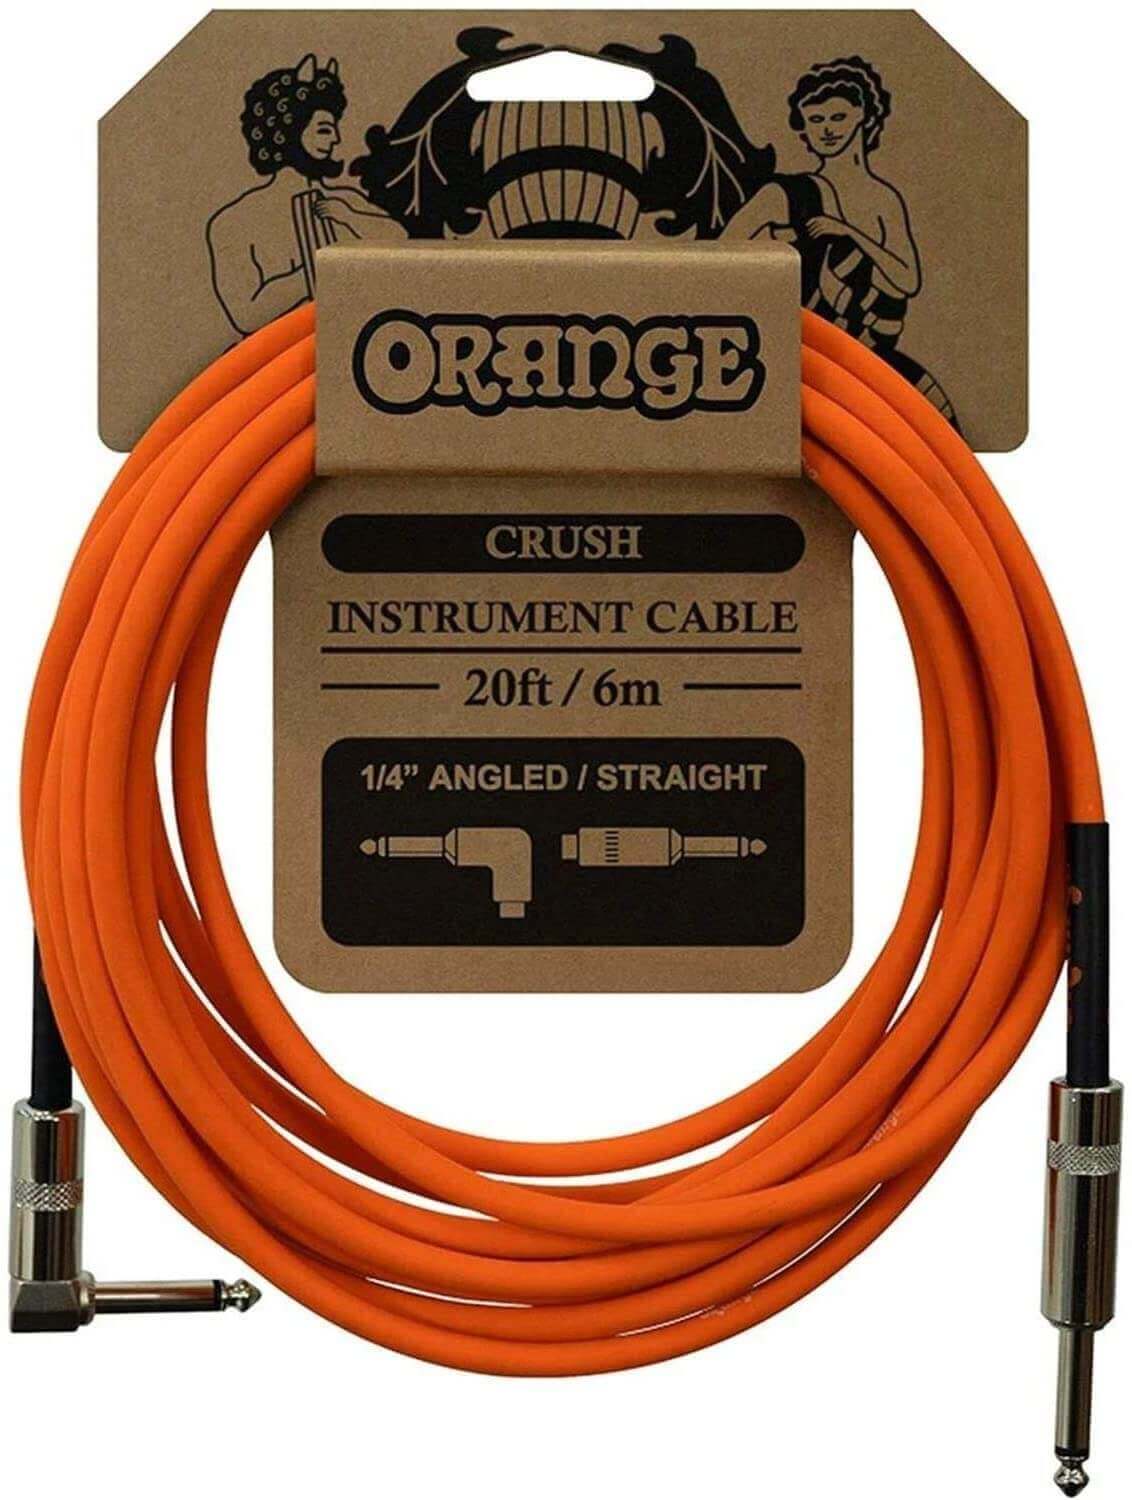 Orange Crush instrument cable